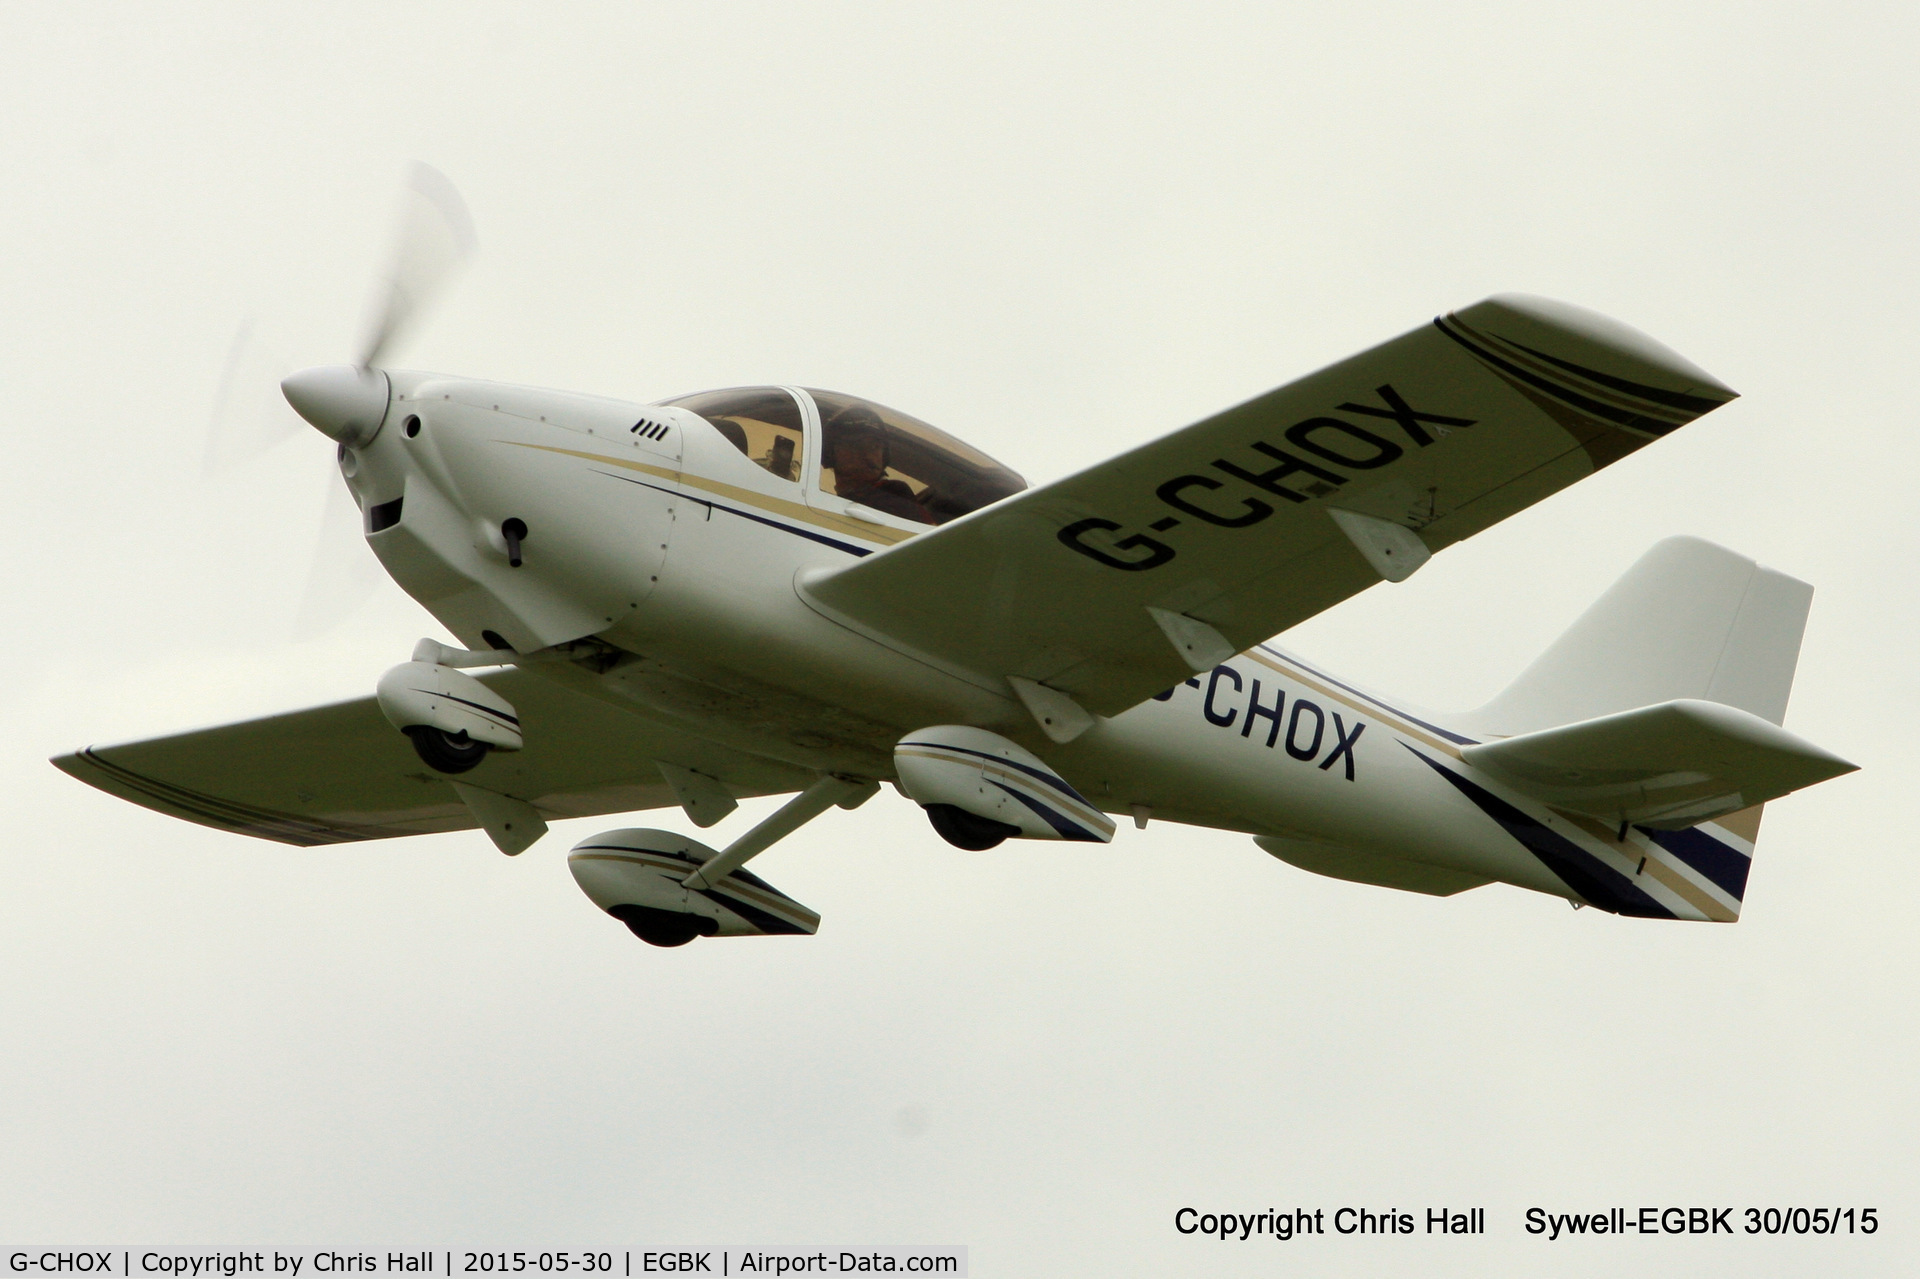 G-CHOX, 2003 Europa XS Tri-Gear C/N PFA 247-13974, at Aeroexpo 2015